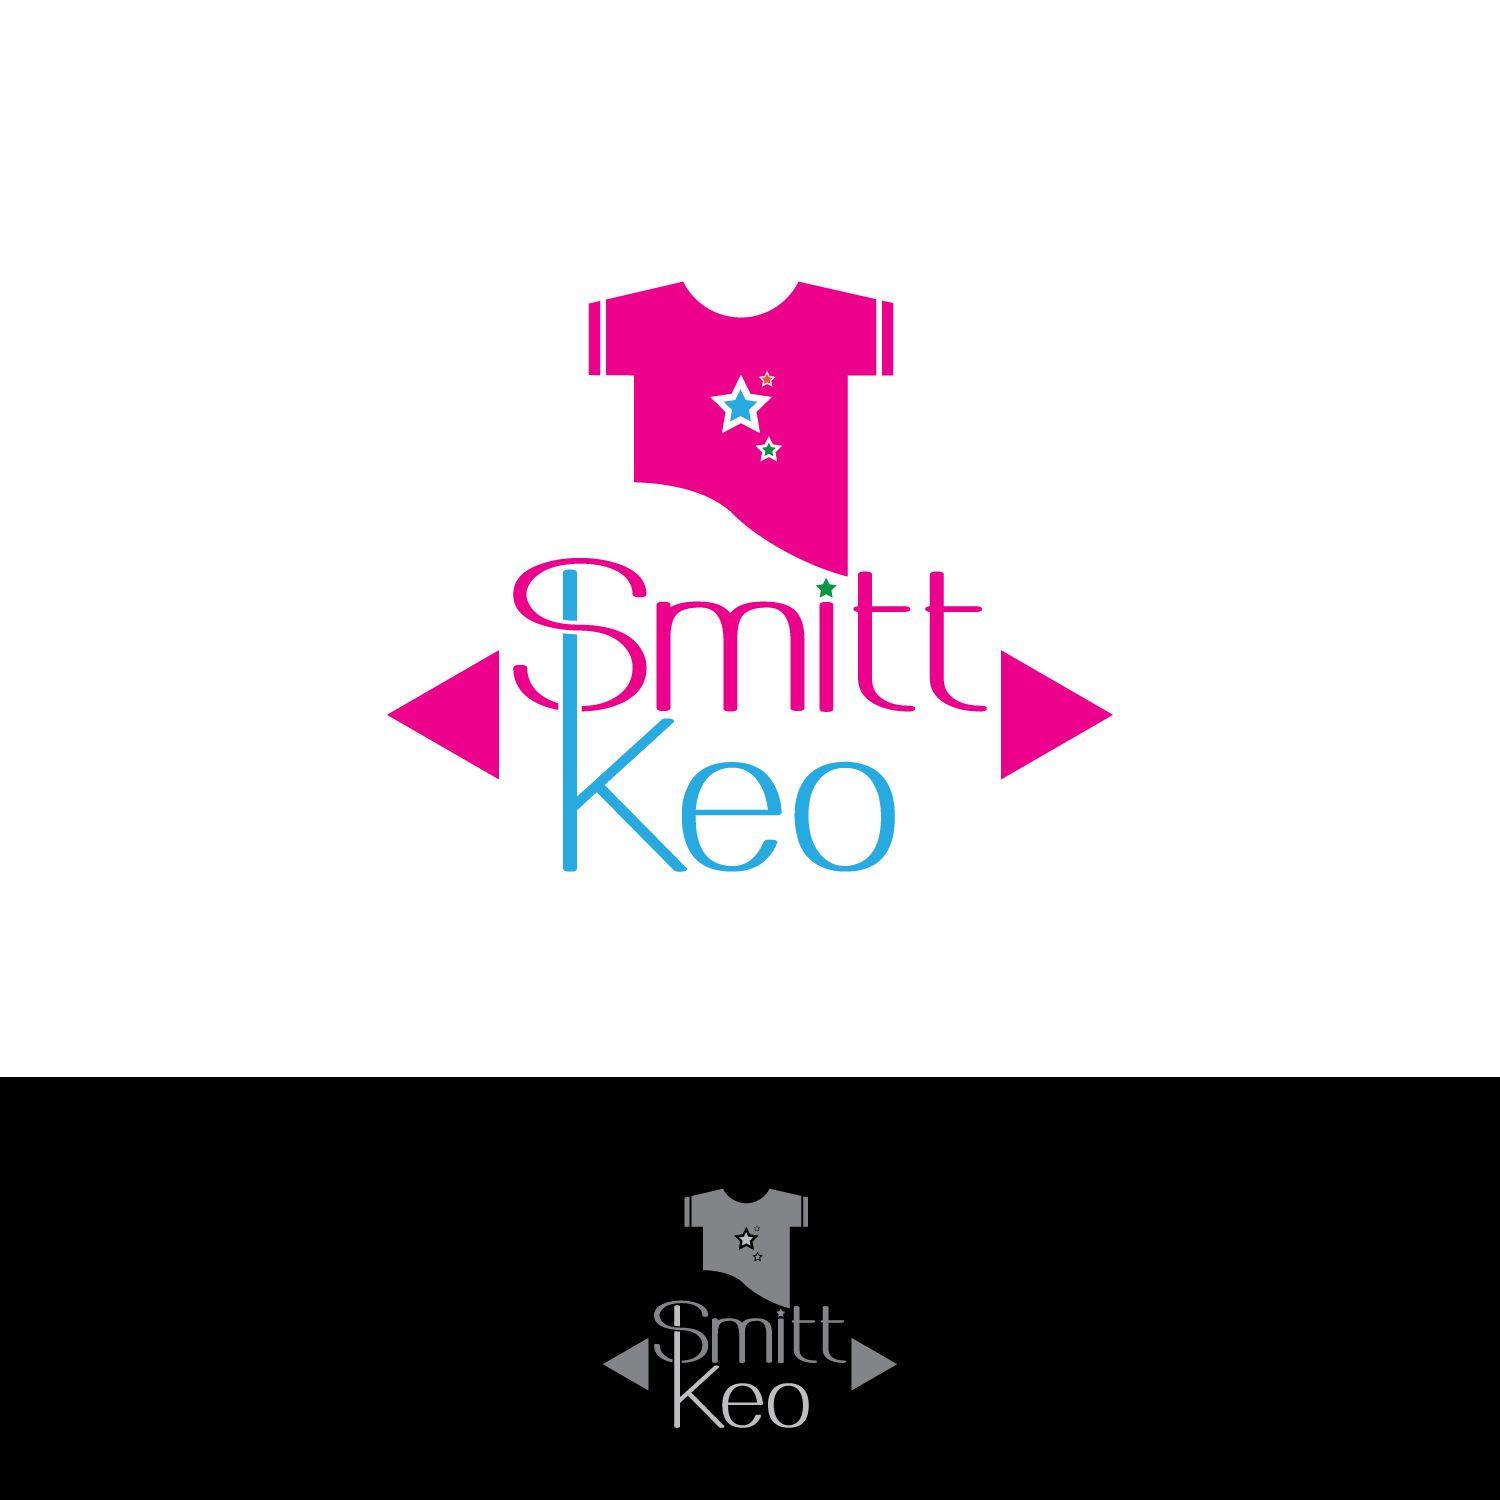 Keo Logo - Modern, Upmarket, Clothing Logo Design for Smitt & Keo